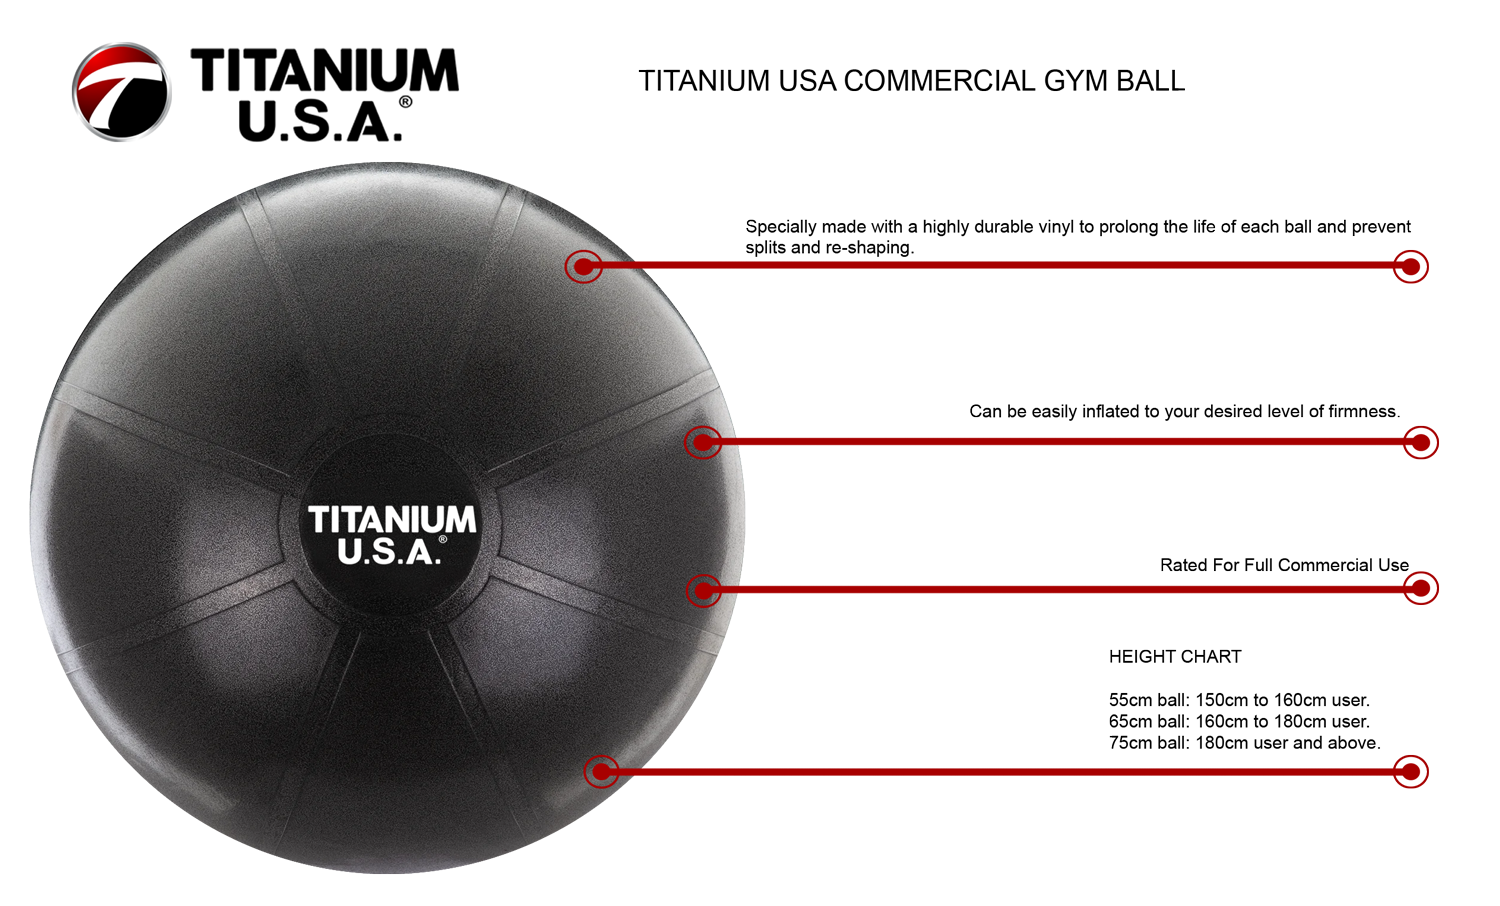 TITANIUM USA 55CM COMMERCIAL GYM BALL